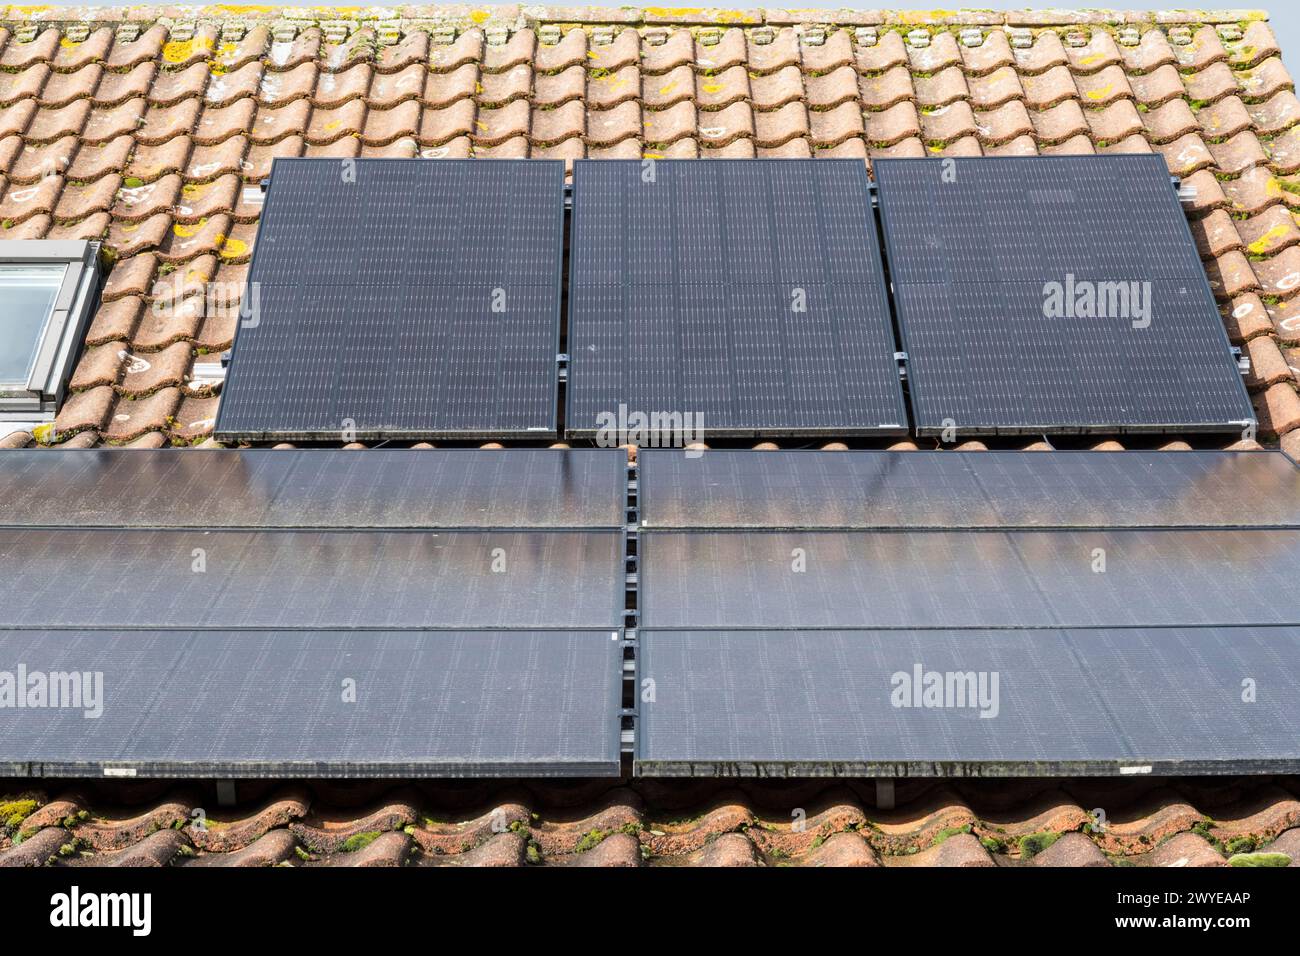 Celle fotovoltaiche a pannello solare sul tetto rivestito di un cottage di Norfolk. NB: I locali nella fotografia sono proprietà rilasciate. Foto Stock